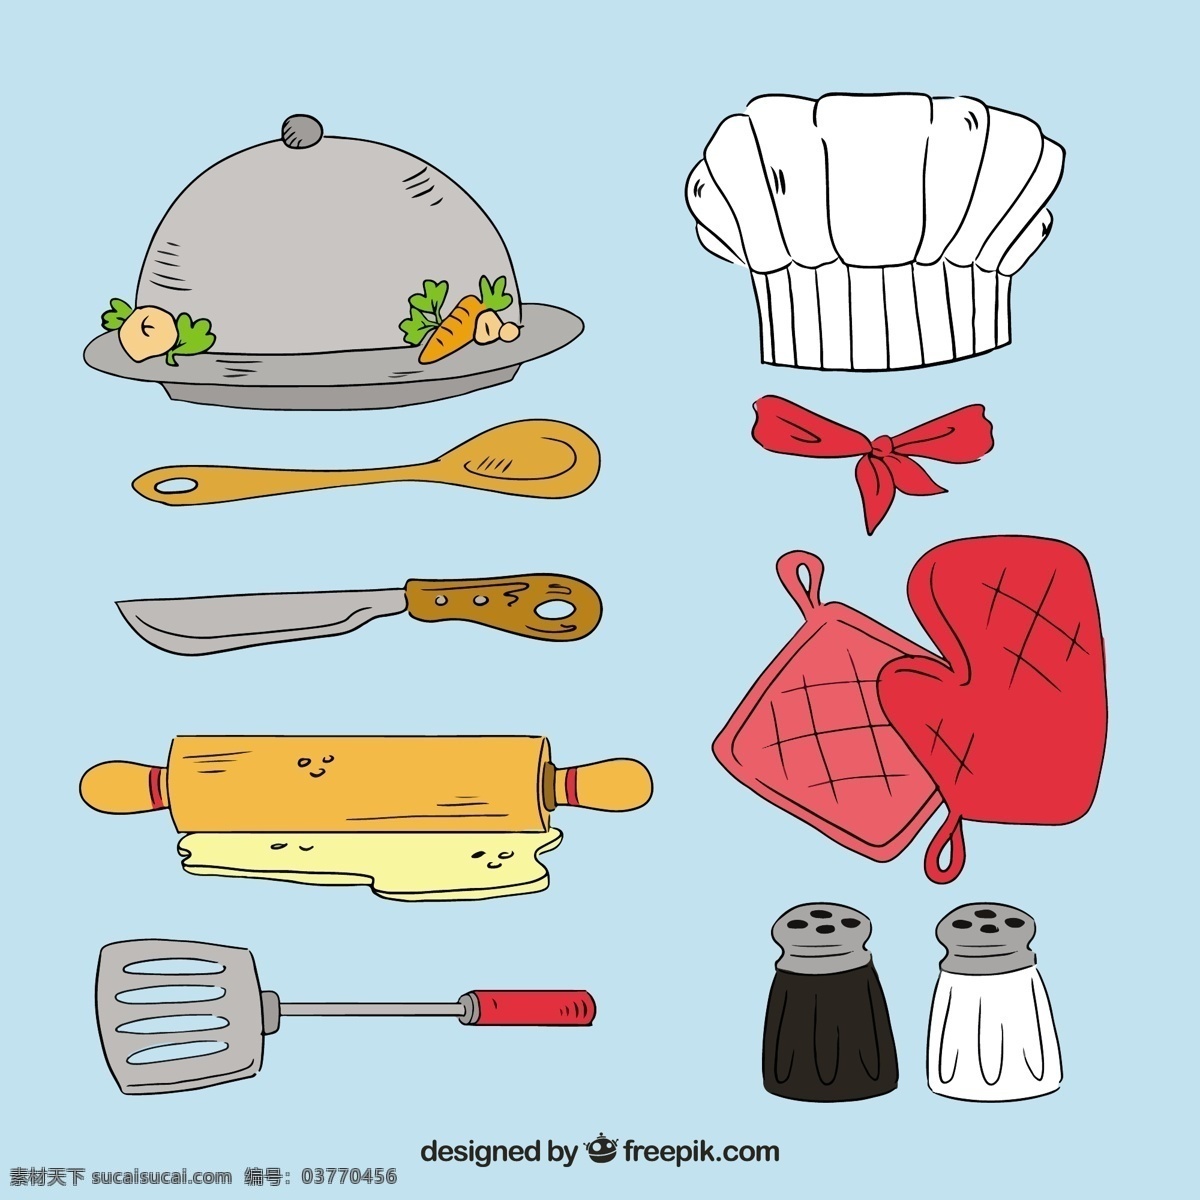 手绘 风格 各种 厨房用品 矢量 手绘风格 各种厨房用品 矢量素材 擀面杖 厨师帽 刀具 木勺 锅铲 手套 厨房用具